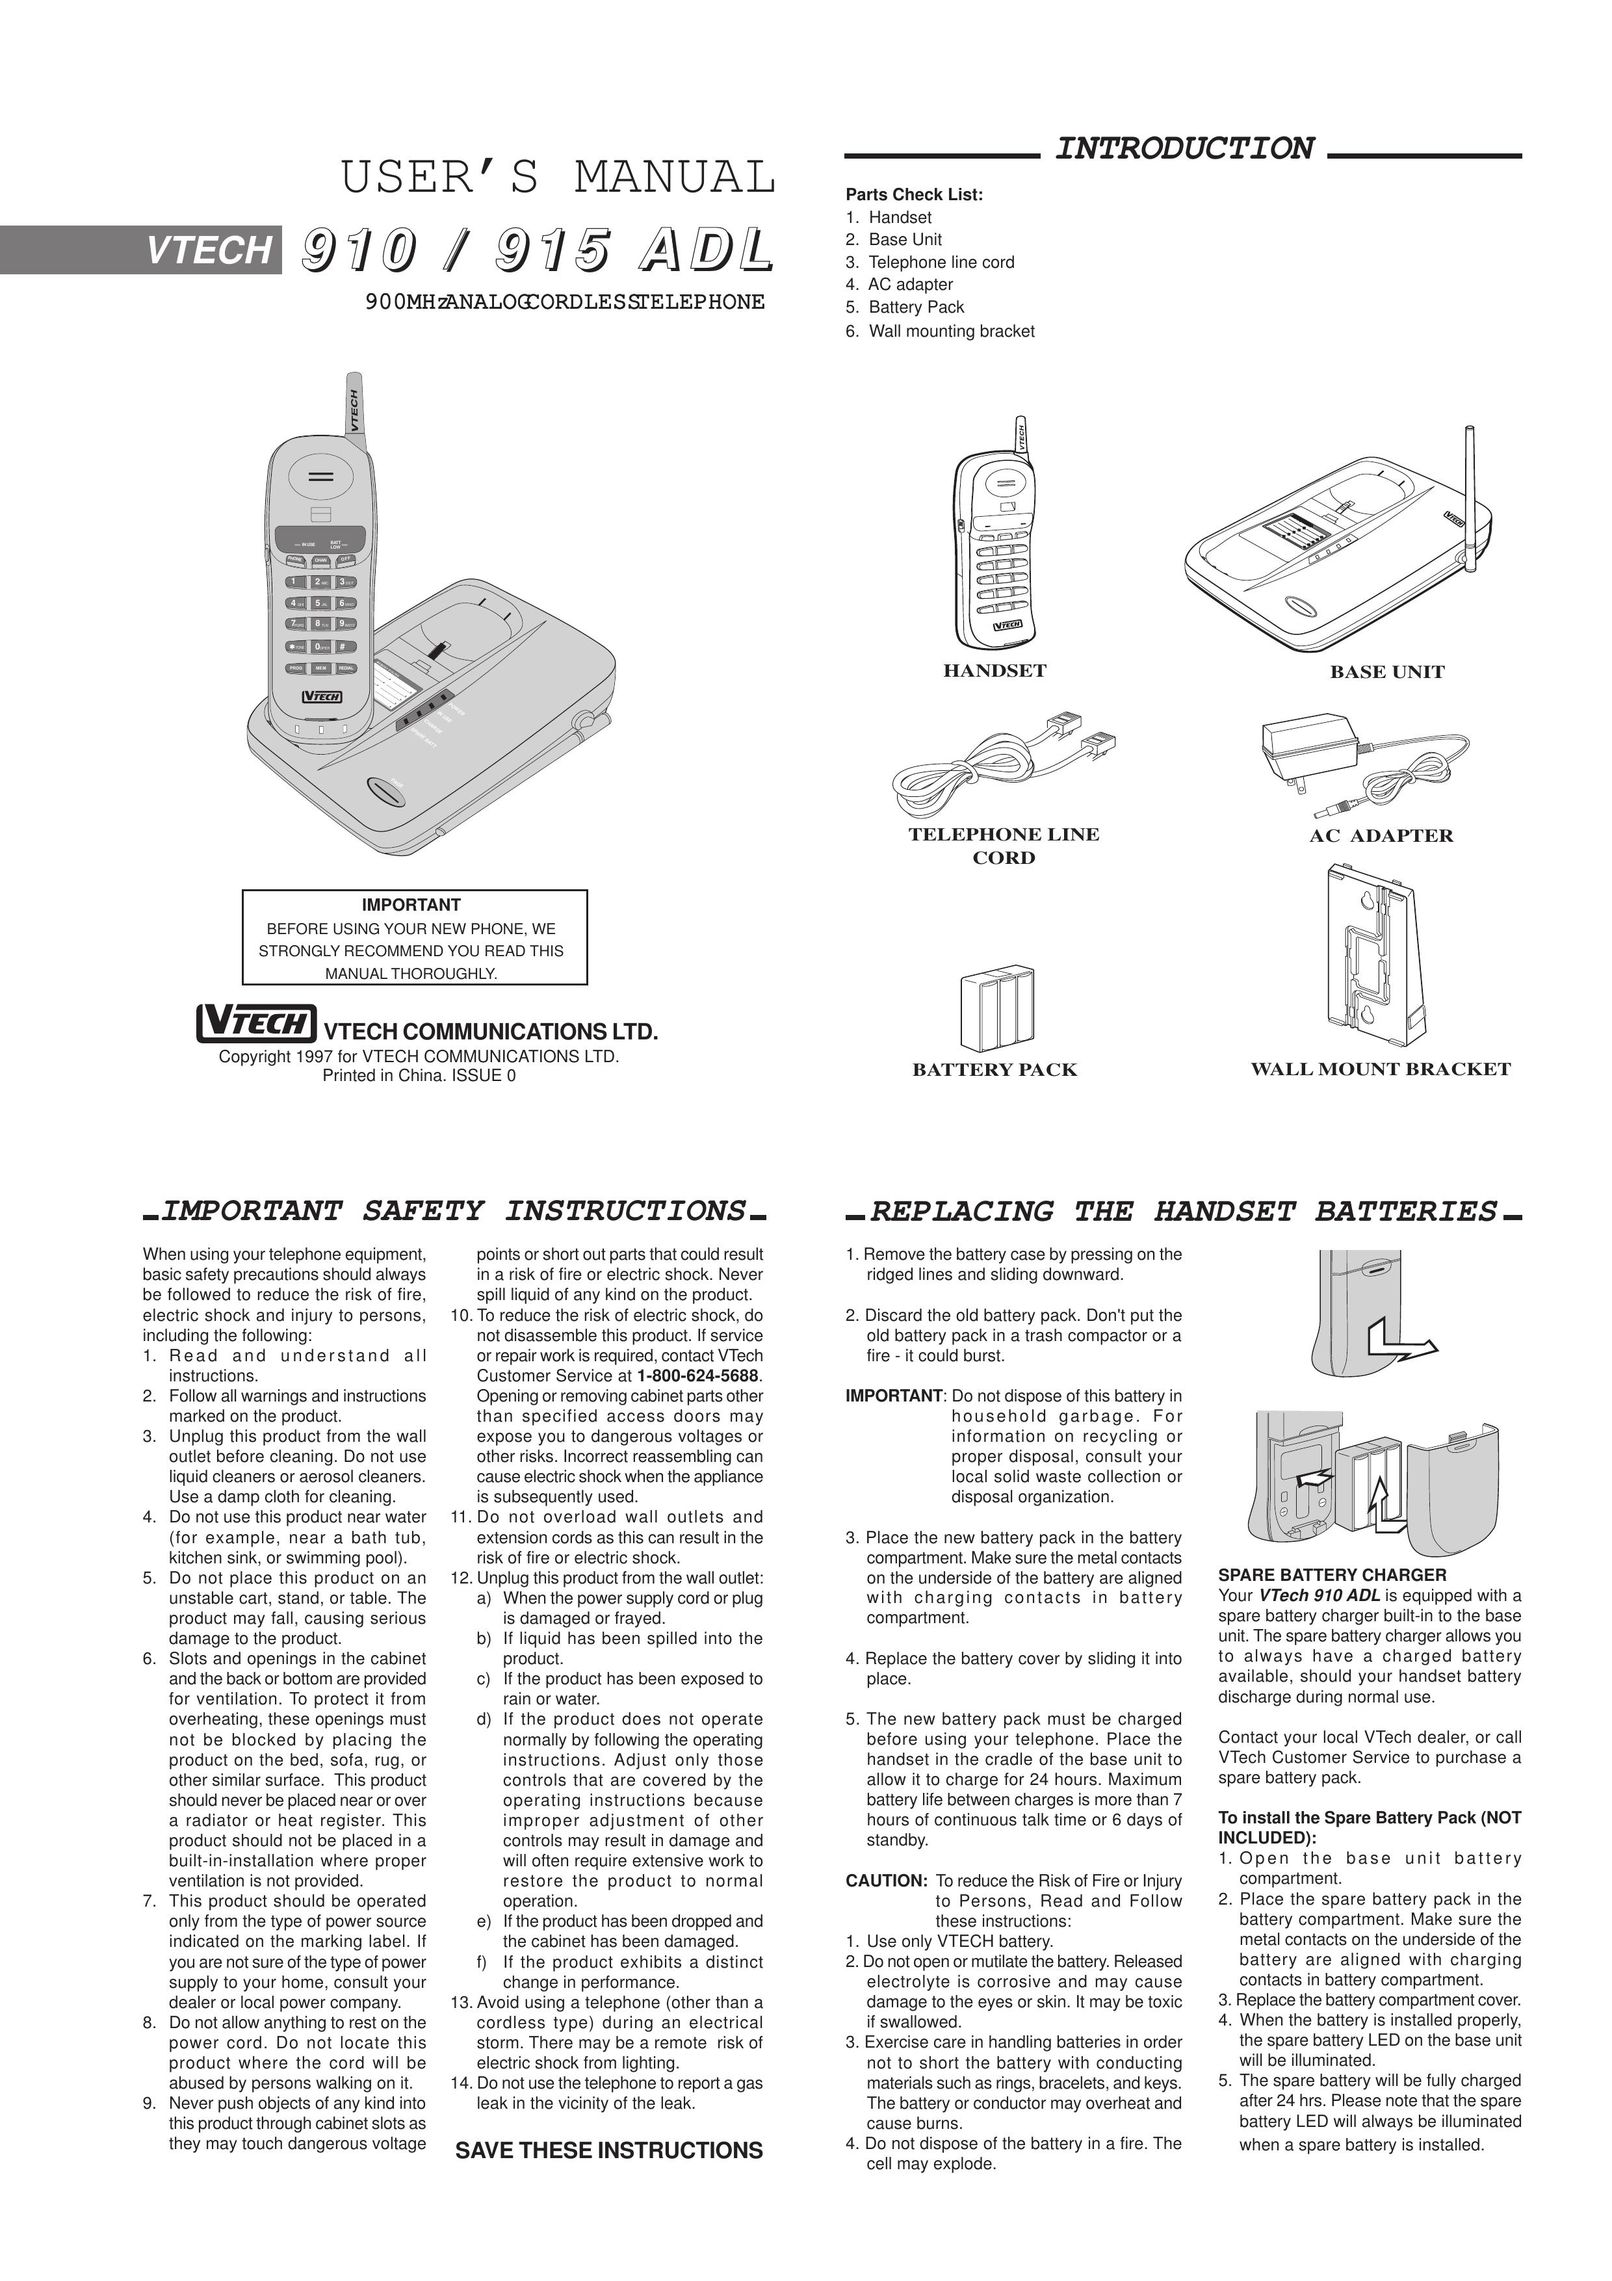 VTech 910 ADL Cordless Telephone User Manual